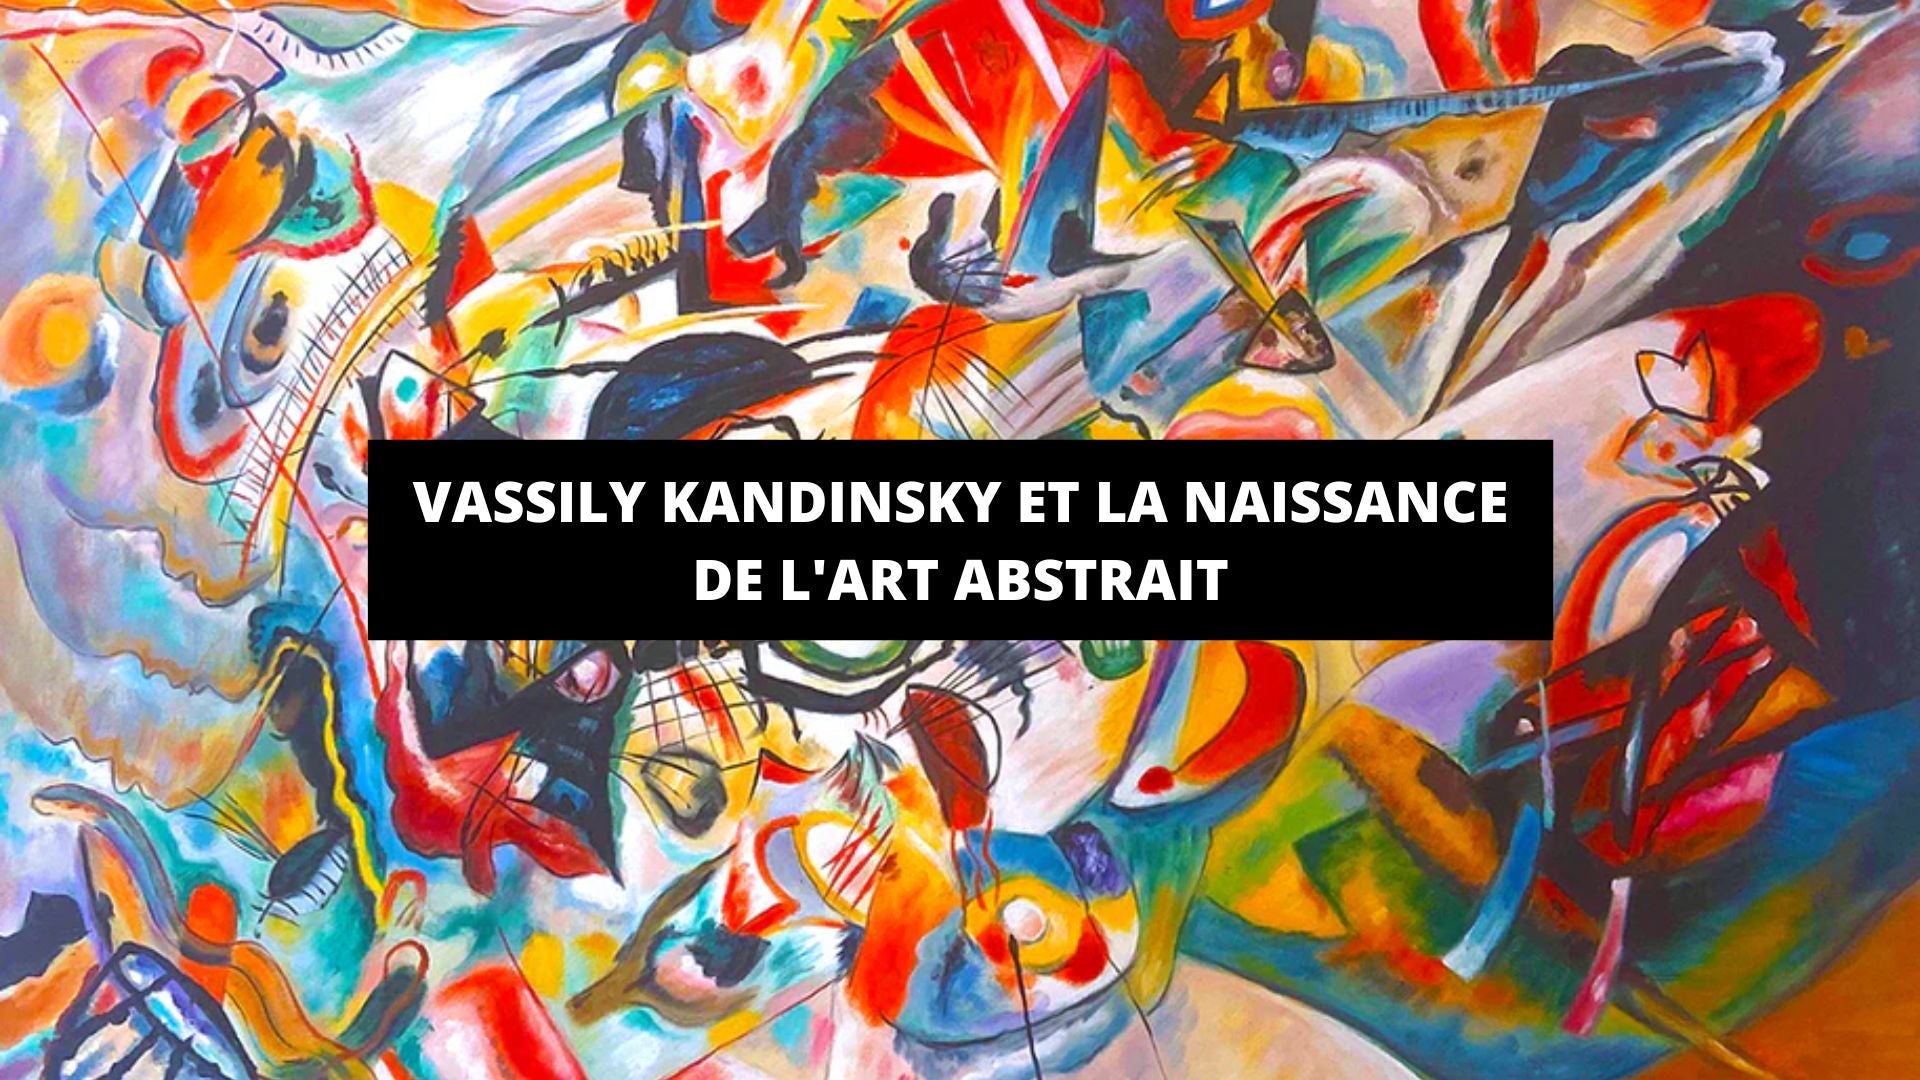 Vassily Kandinsky et la naissance de l'art abstrait - The Art Avenue